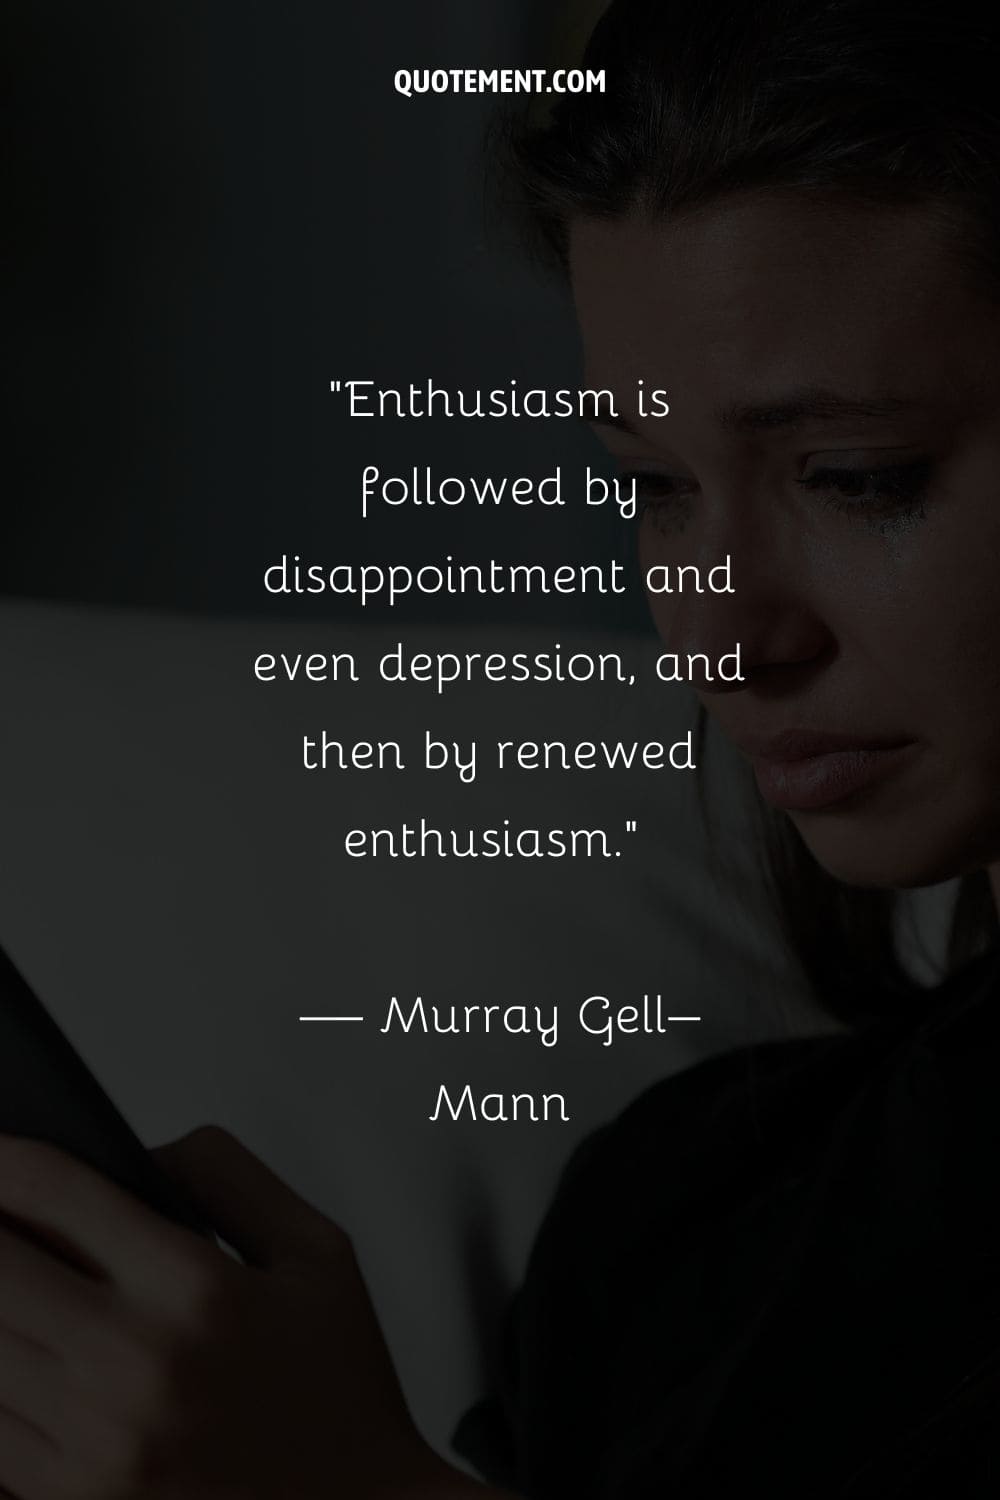 Al entusiasmo le sigue la decepción e incluso la depresión, y después un entusiasmo renovado.